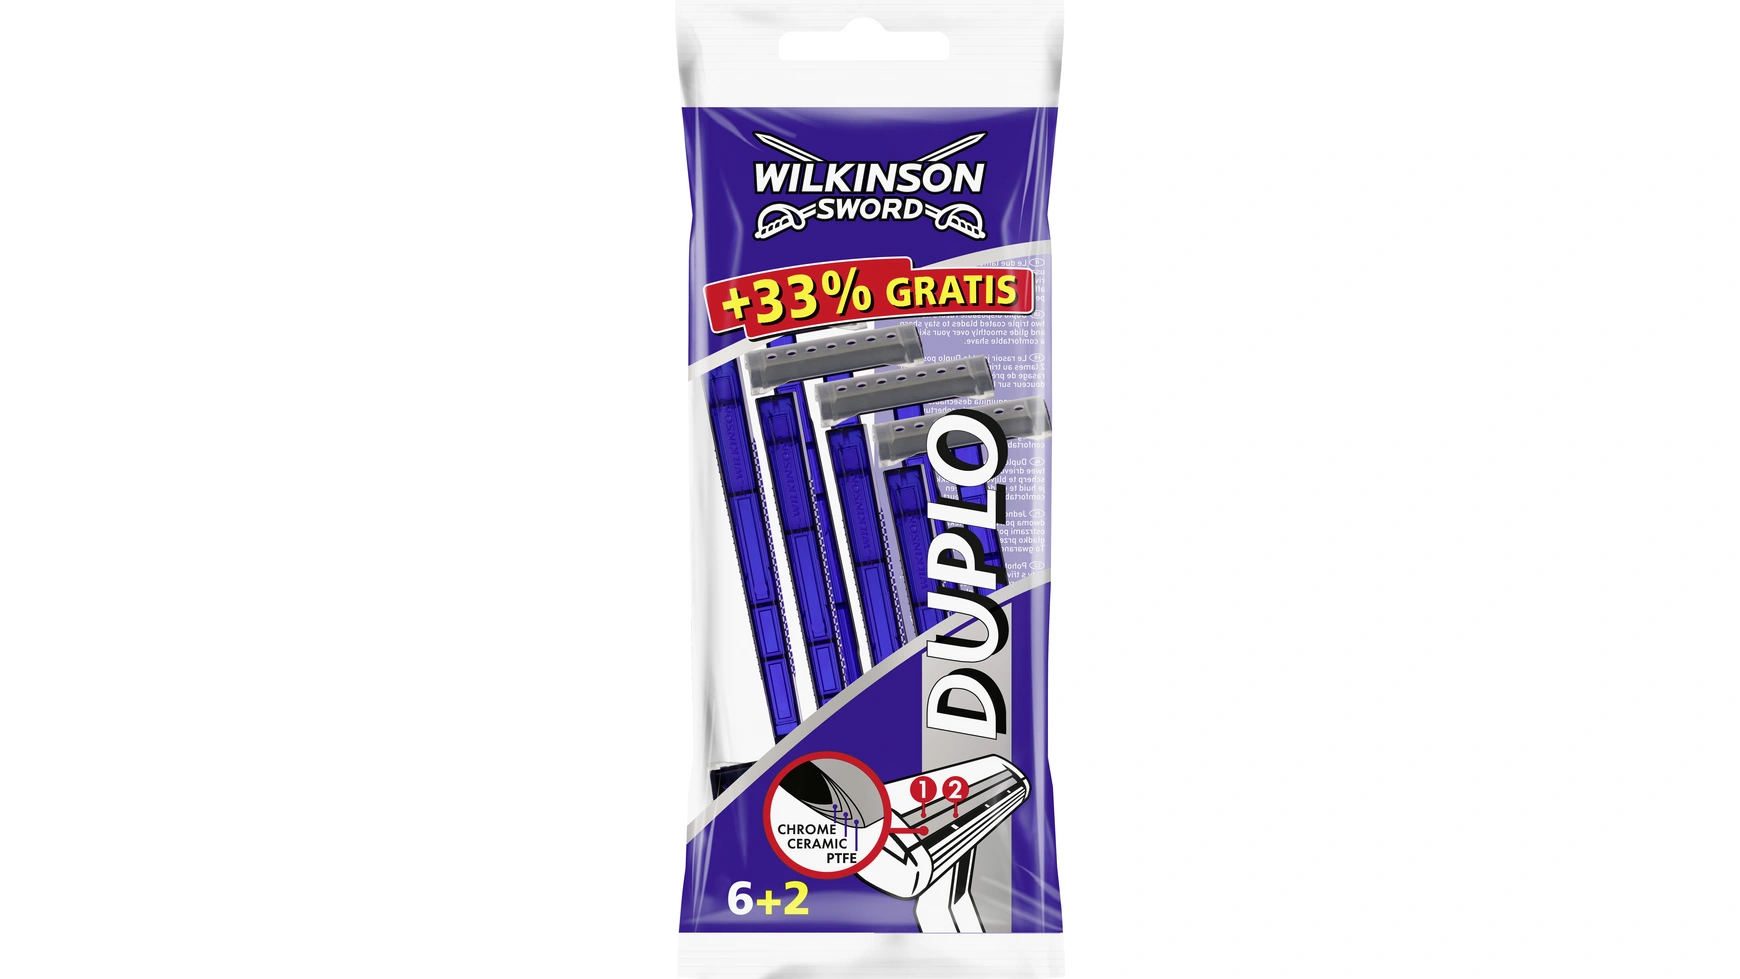 цена Sword duplo одноразовая бритва Wilkinson